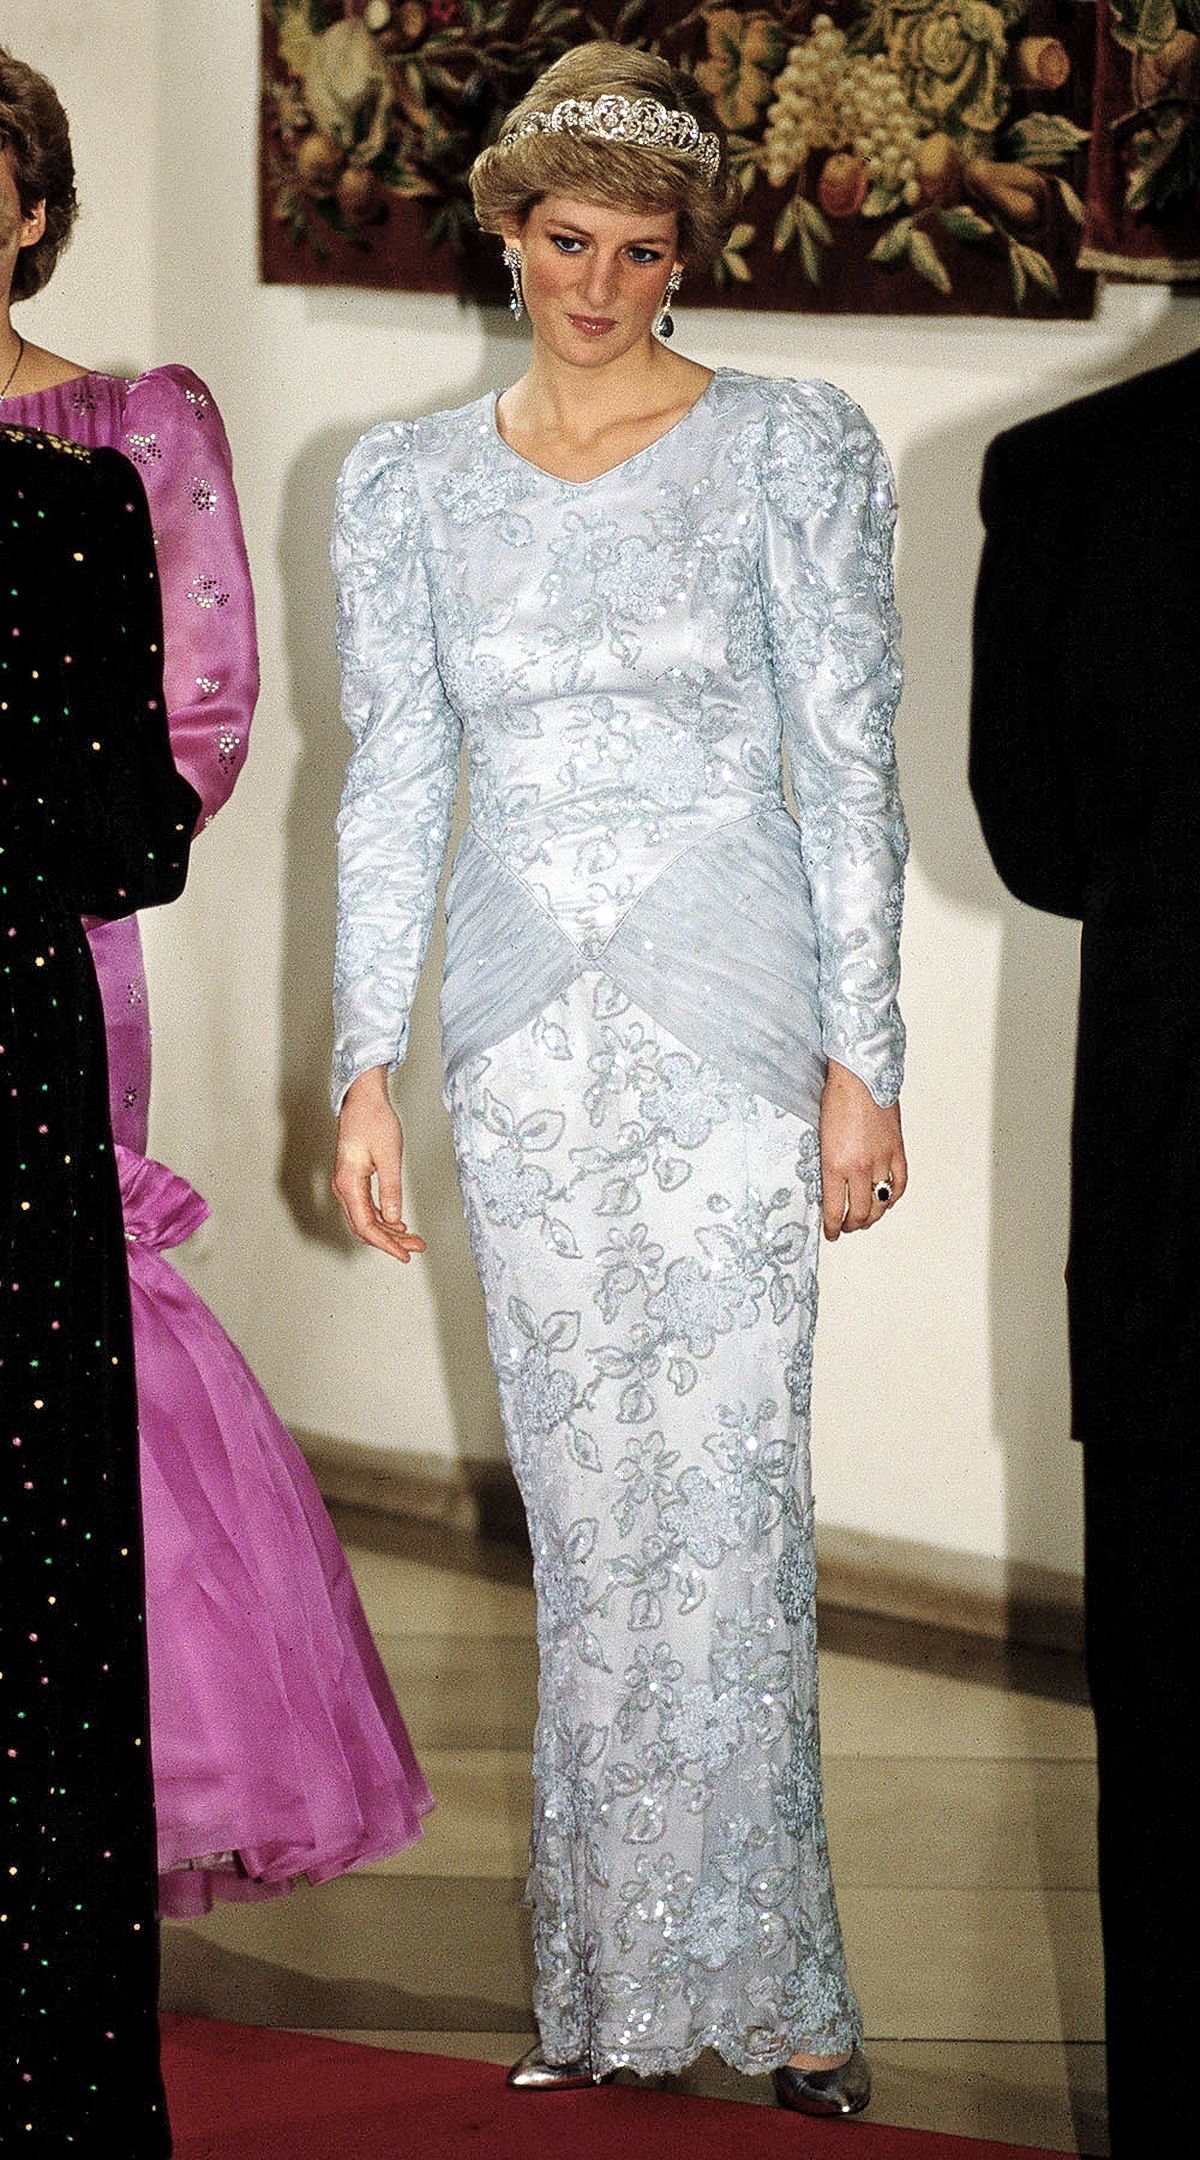 Принцесса Диана в вечернем платье от Кэтрин Уокер и тиаре семьи Спенсер на банкете в Мюнхене